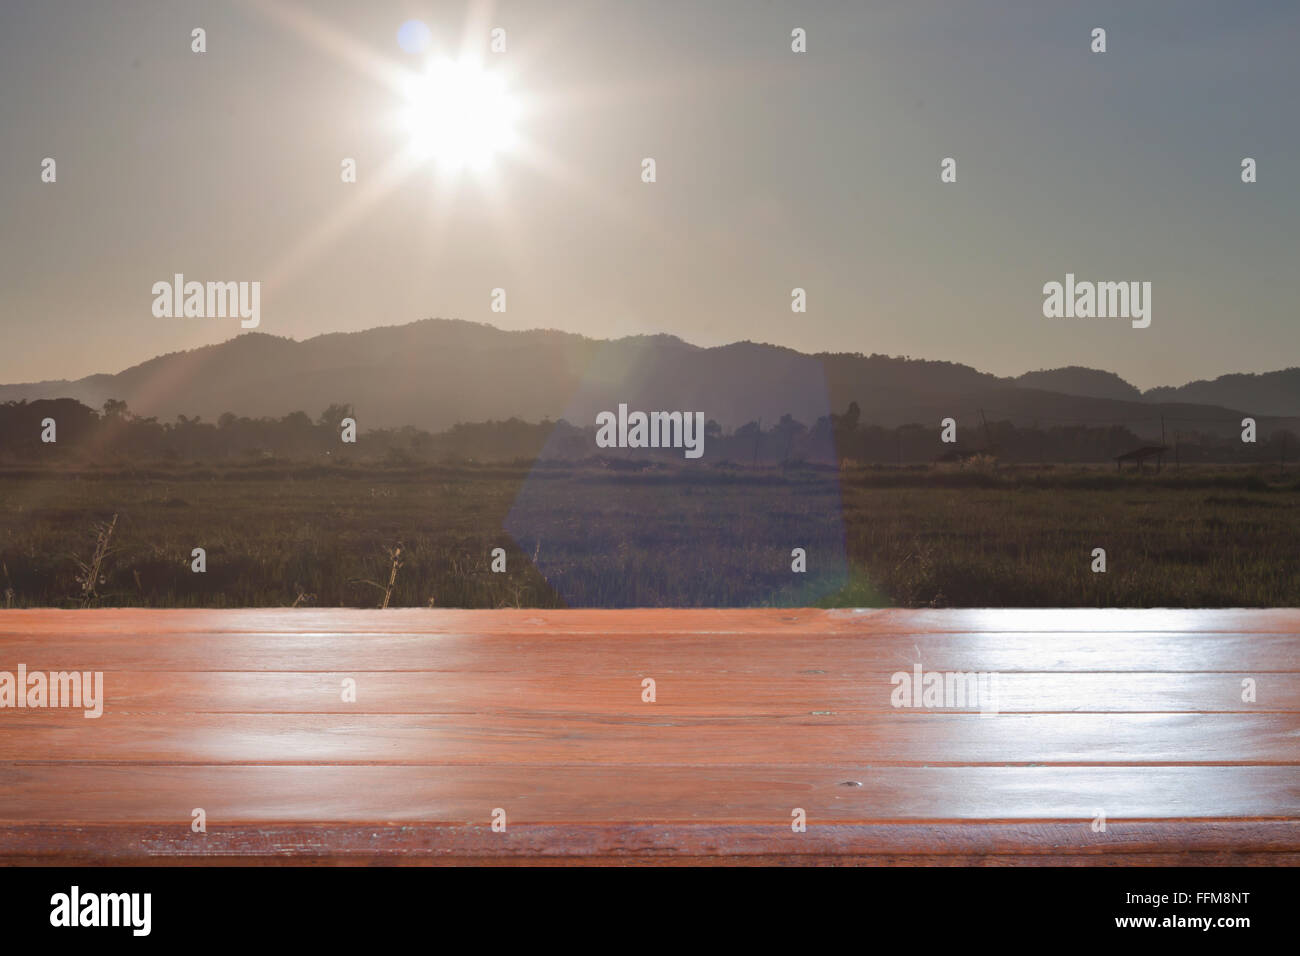 Ancienne table en bois vide haut avec le lever du soleil et l'arrière-plan sur le terrain, stock photo Banque D'Images